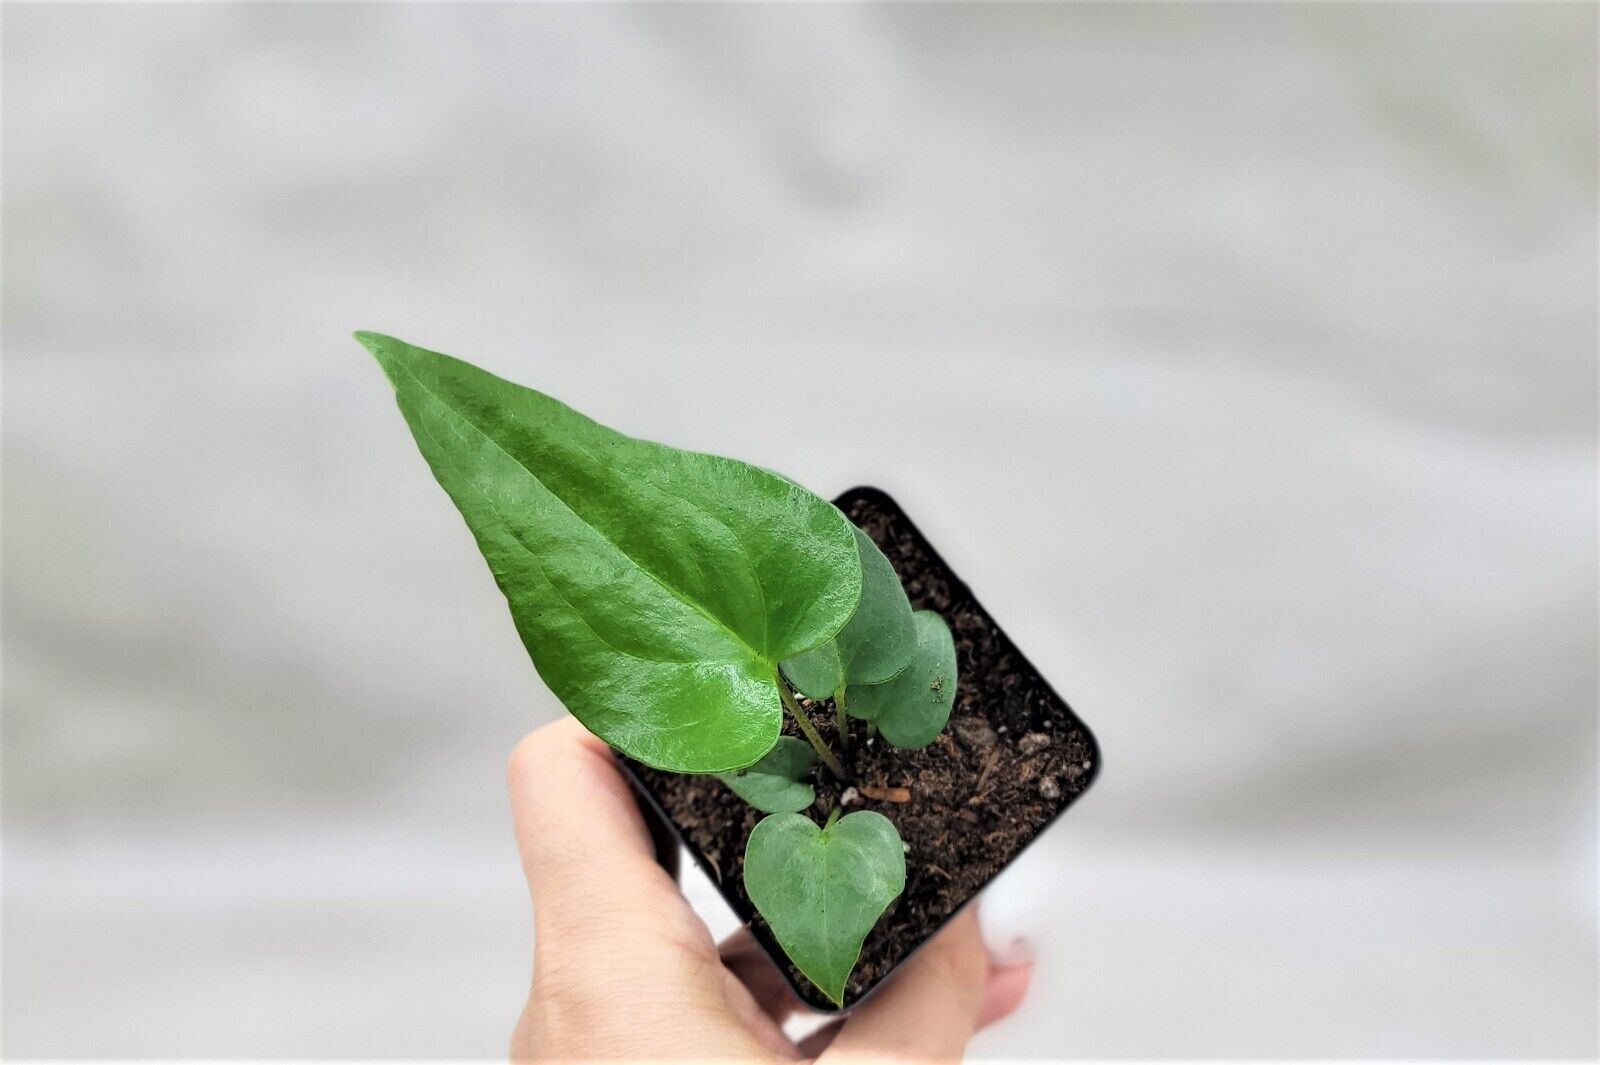 Live 3" pot Anthurium podophyllum live plant, Lacy Leaf Aroid houseplant - $31.98